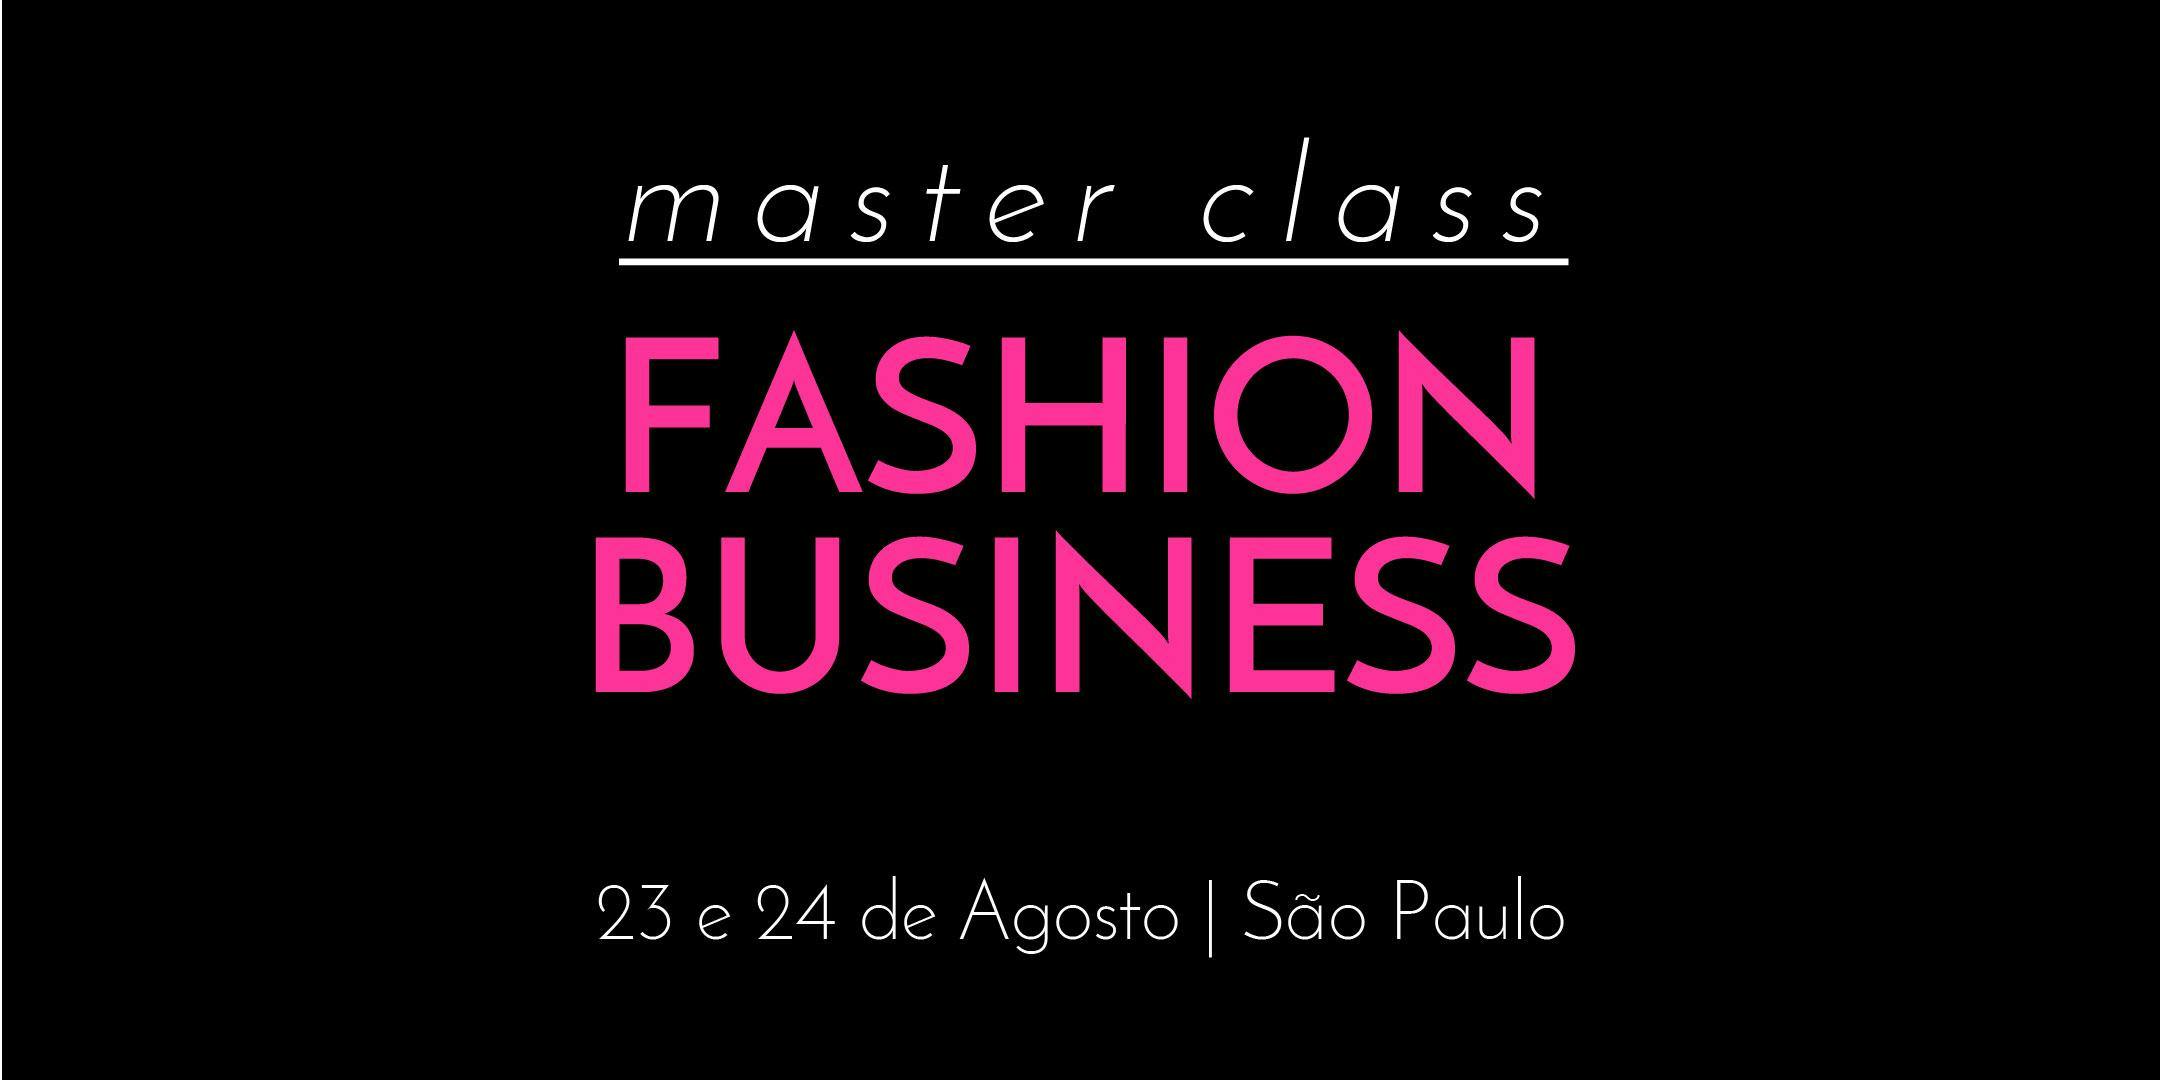 Fashion Business Master Class - 23 e 24 de Agosto - São Paulo